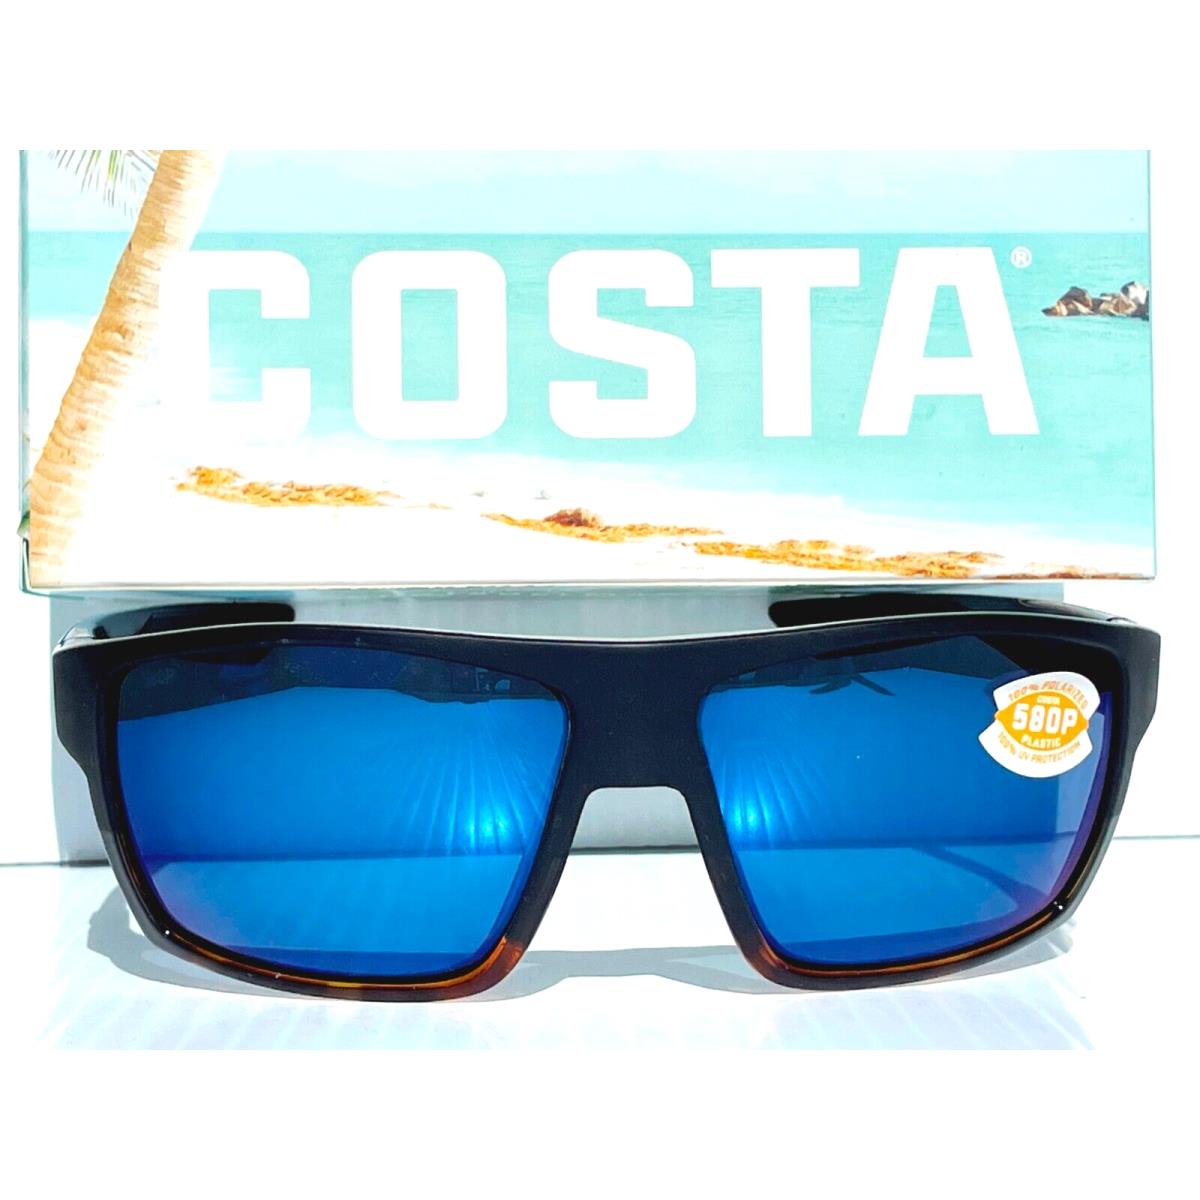 Costa Del Mar sunglasses Bloke - Frame: Black & Tortoise, Lens: Blue 0